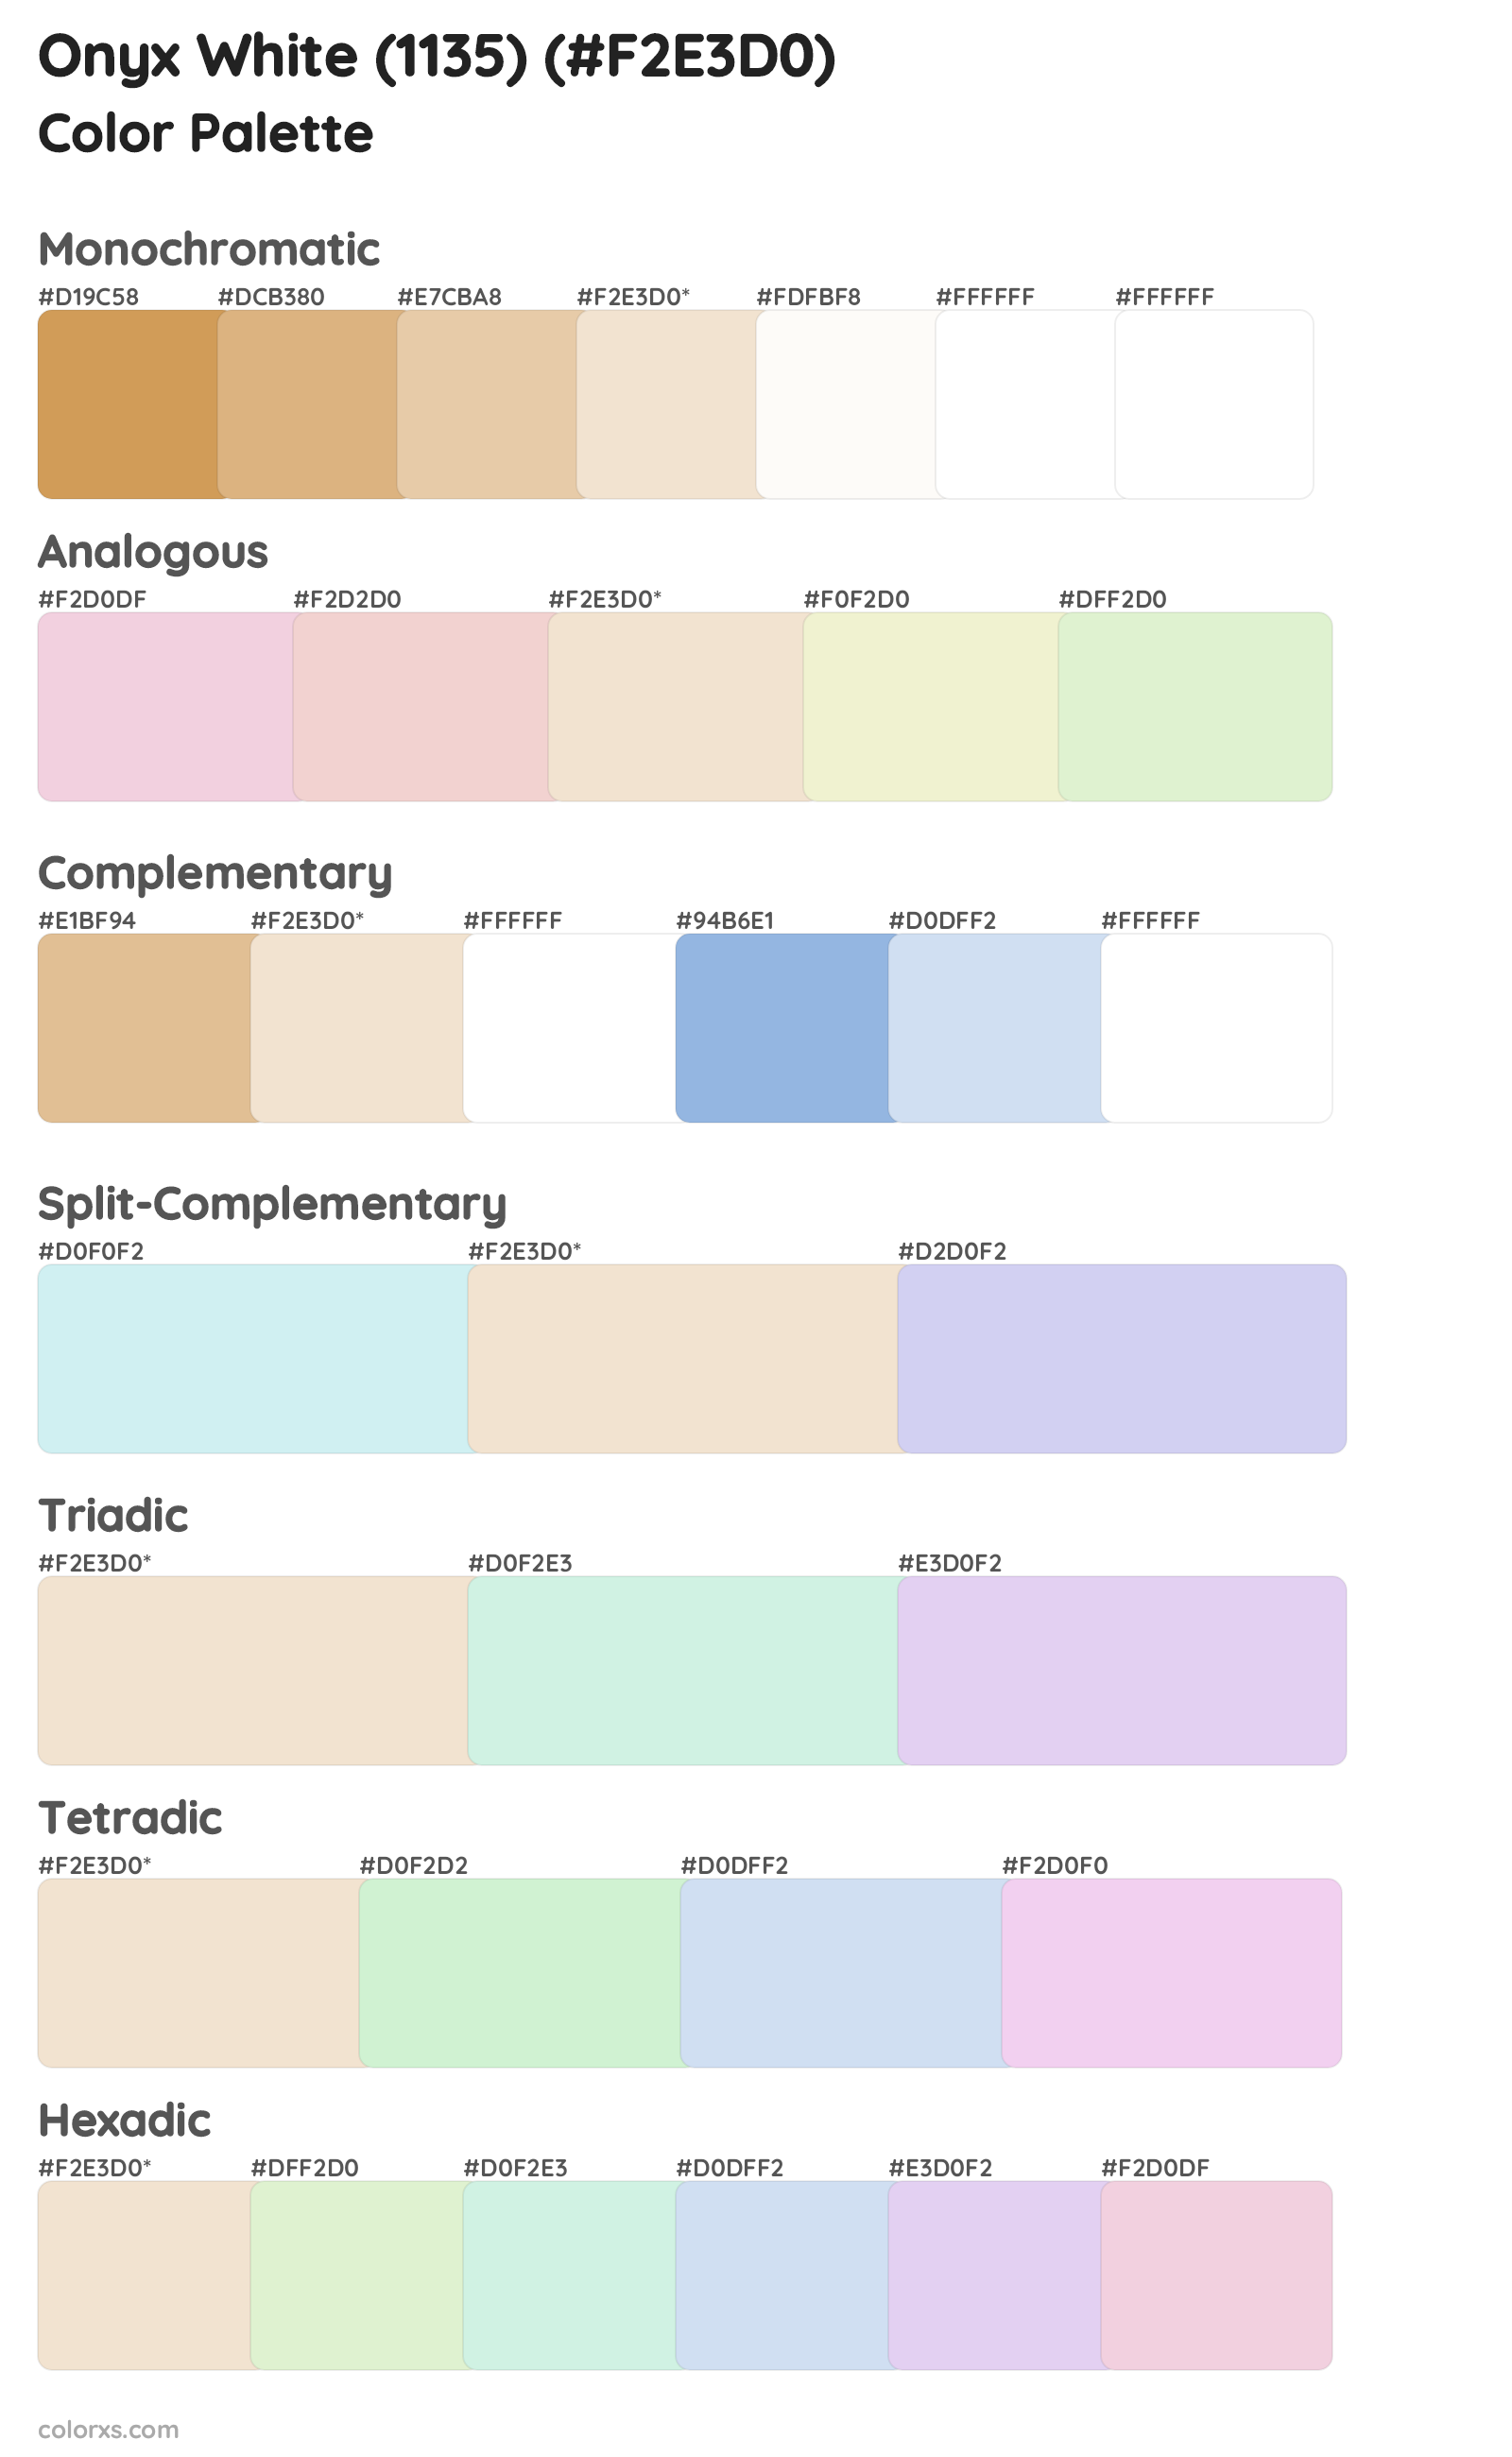 Onyx White (1135) Color Scheme Palettes